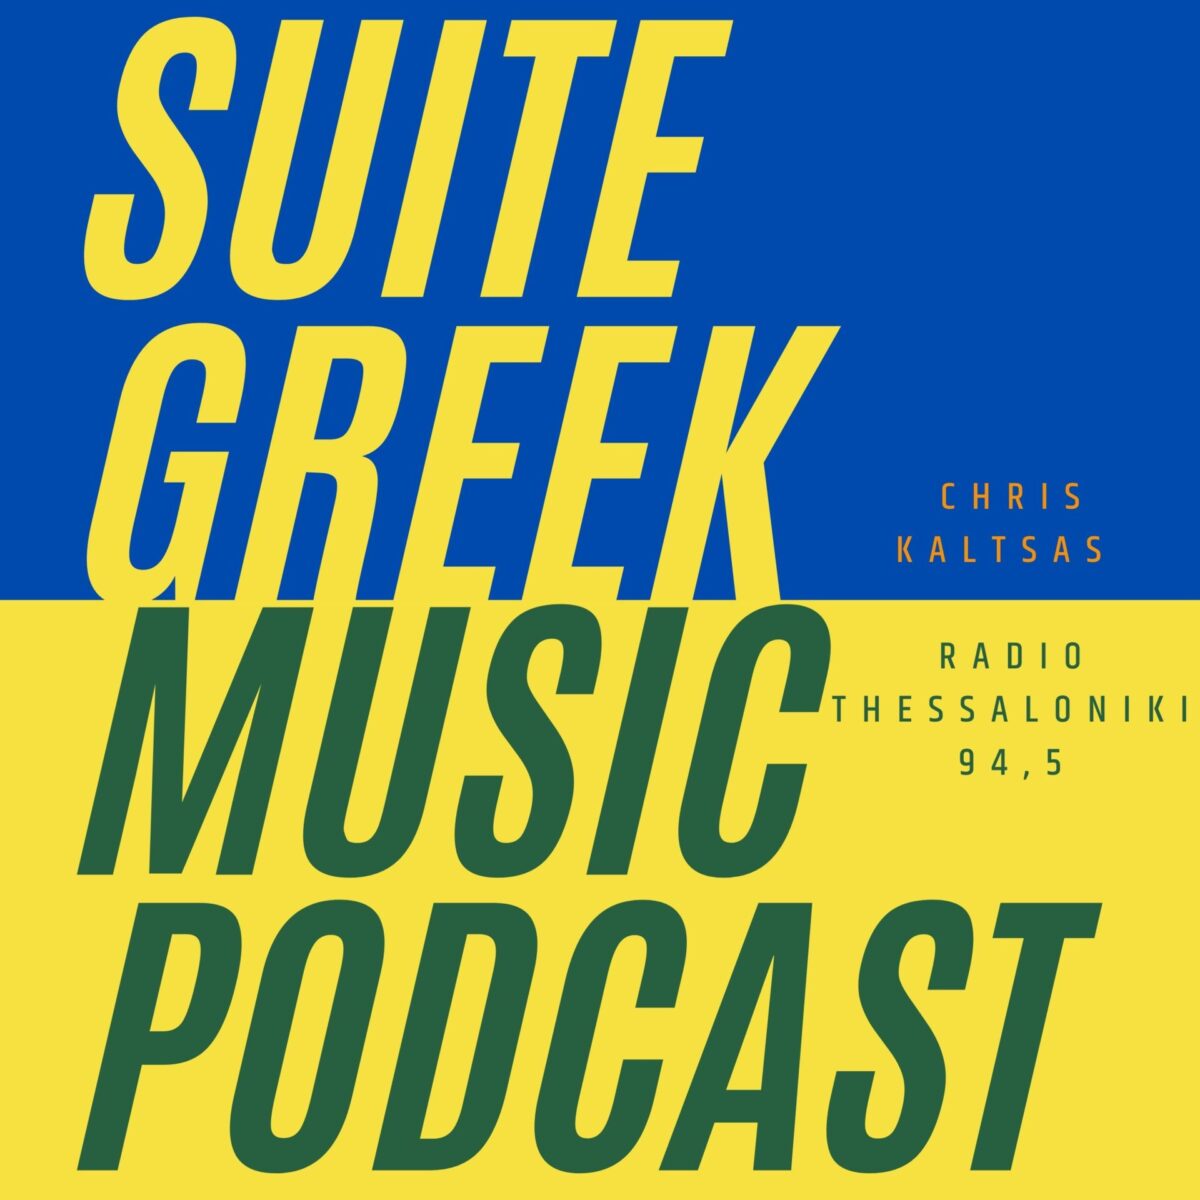 Suite Greek Music podcast στο Ράδιο Θεσσαλονίκη 94,5 S03E10